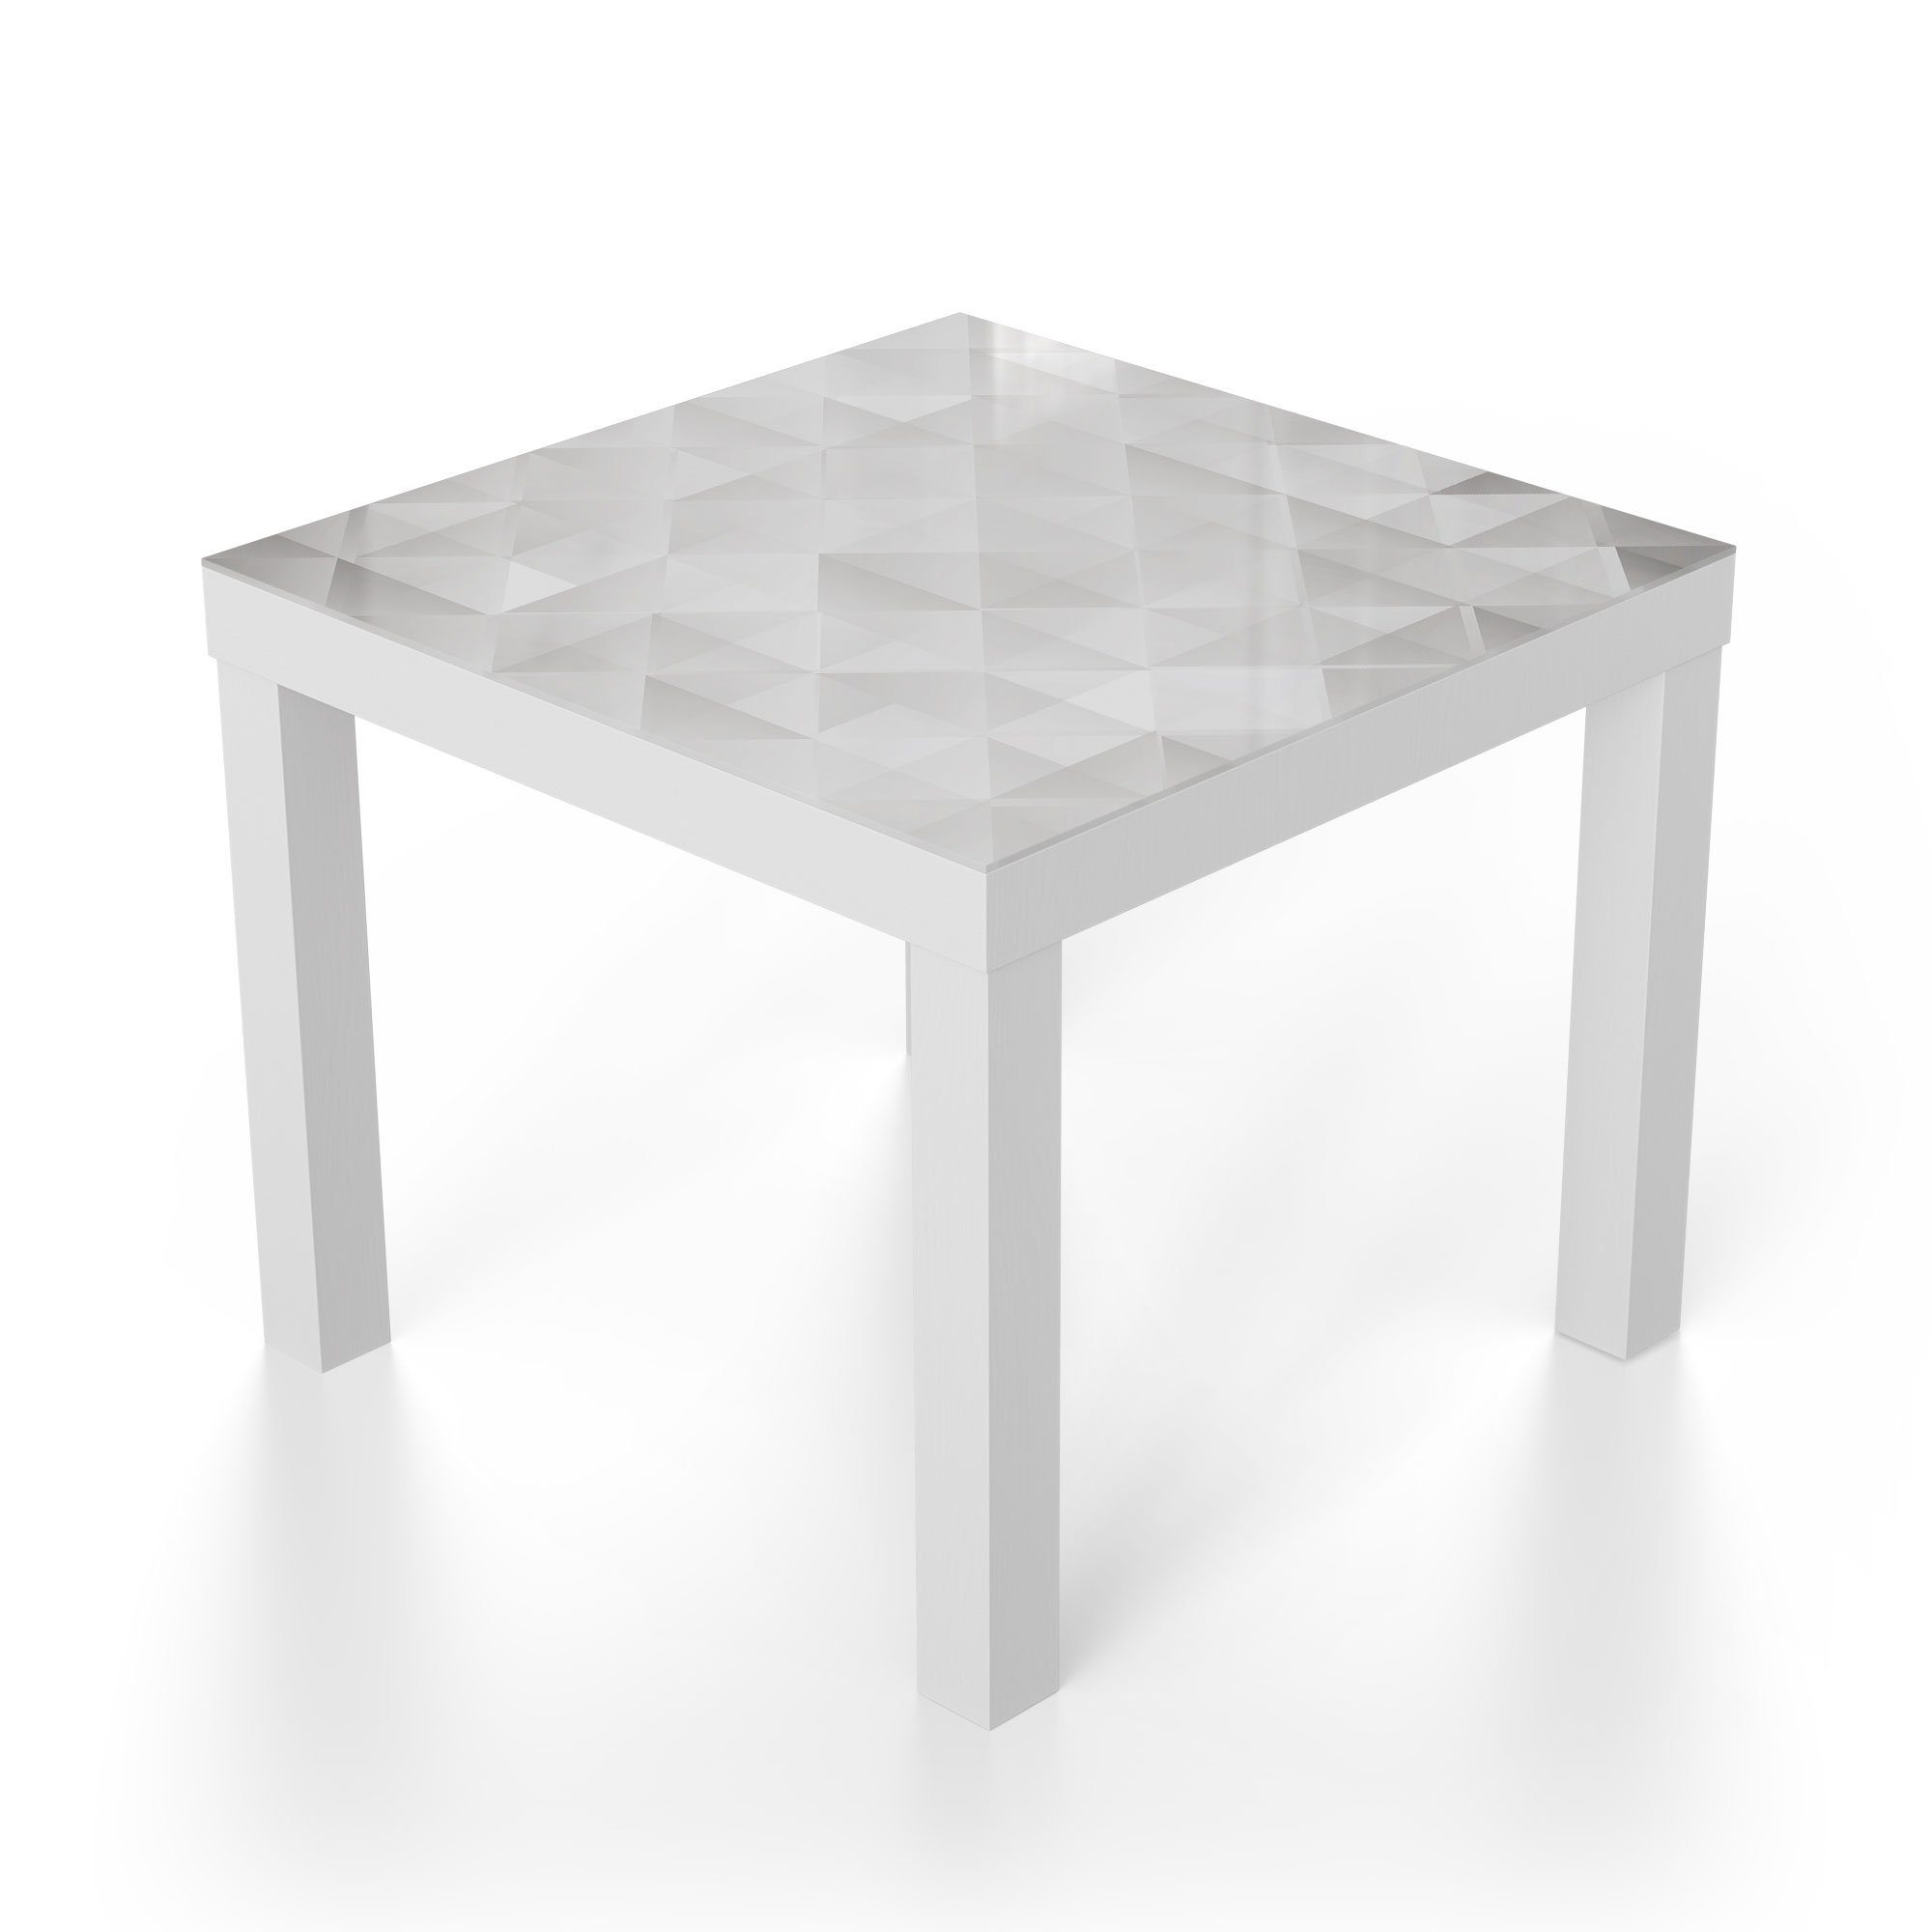 DEQORI Couchtisch Glas Weiß Rauten', 'Symmetrische modern Glastisch Beistelltisch